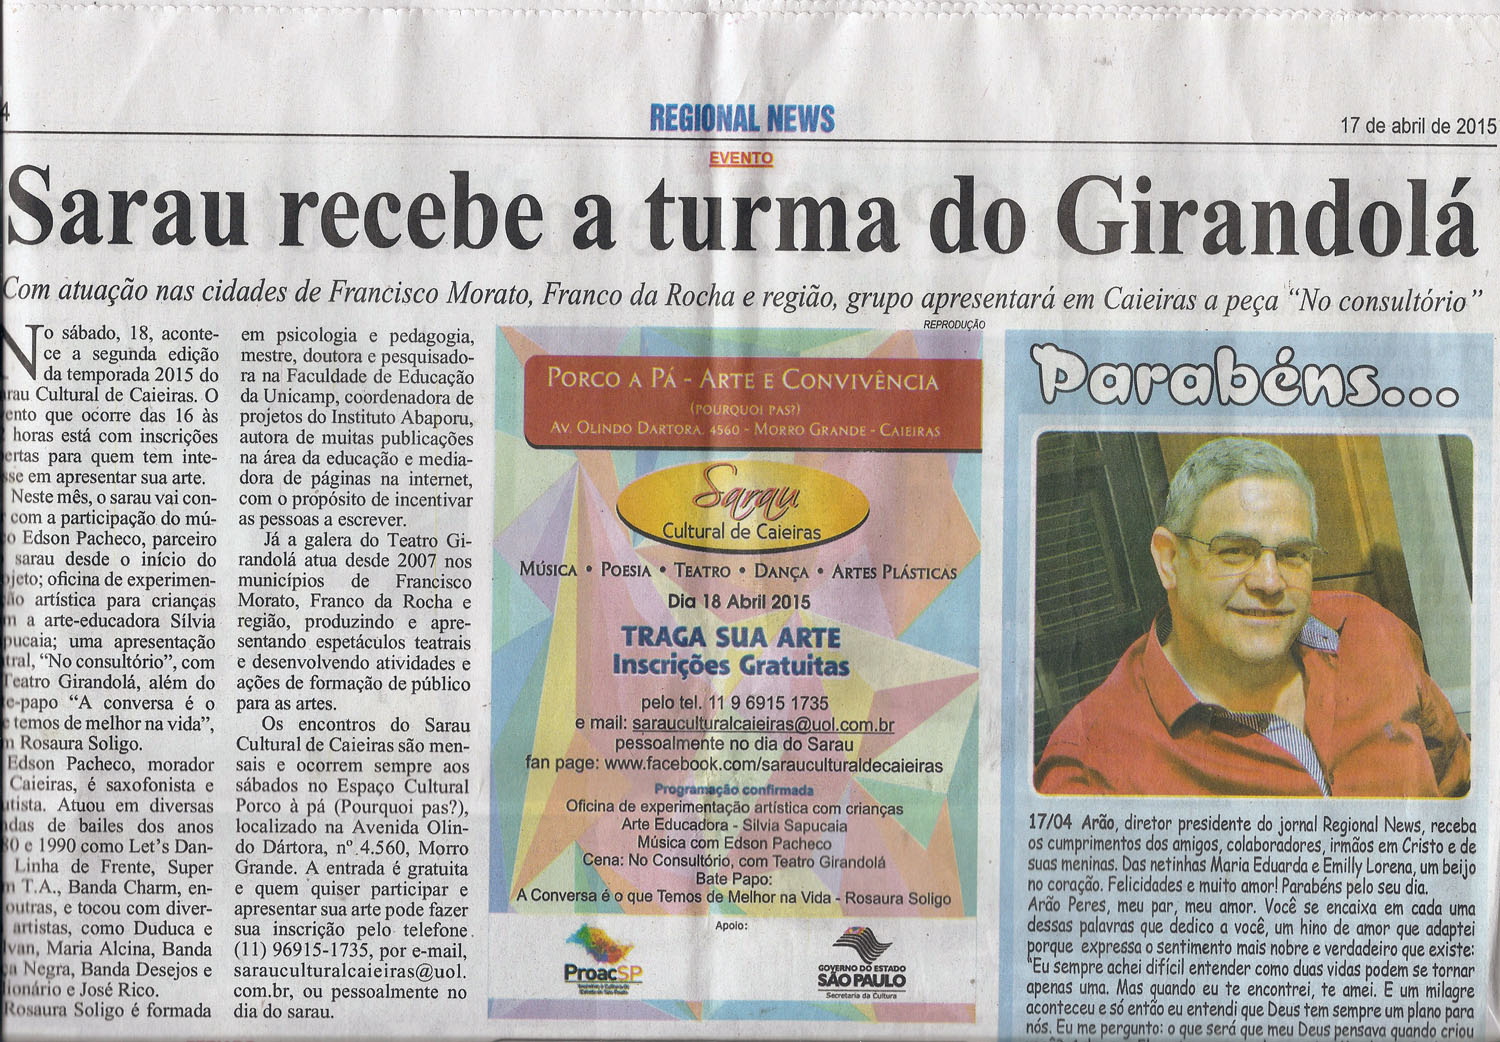 Matéria publicada no Jornal Regional News sobre a participação do Teatro Girandolá no Sarau Cultural de Caieiras